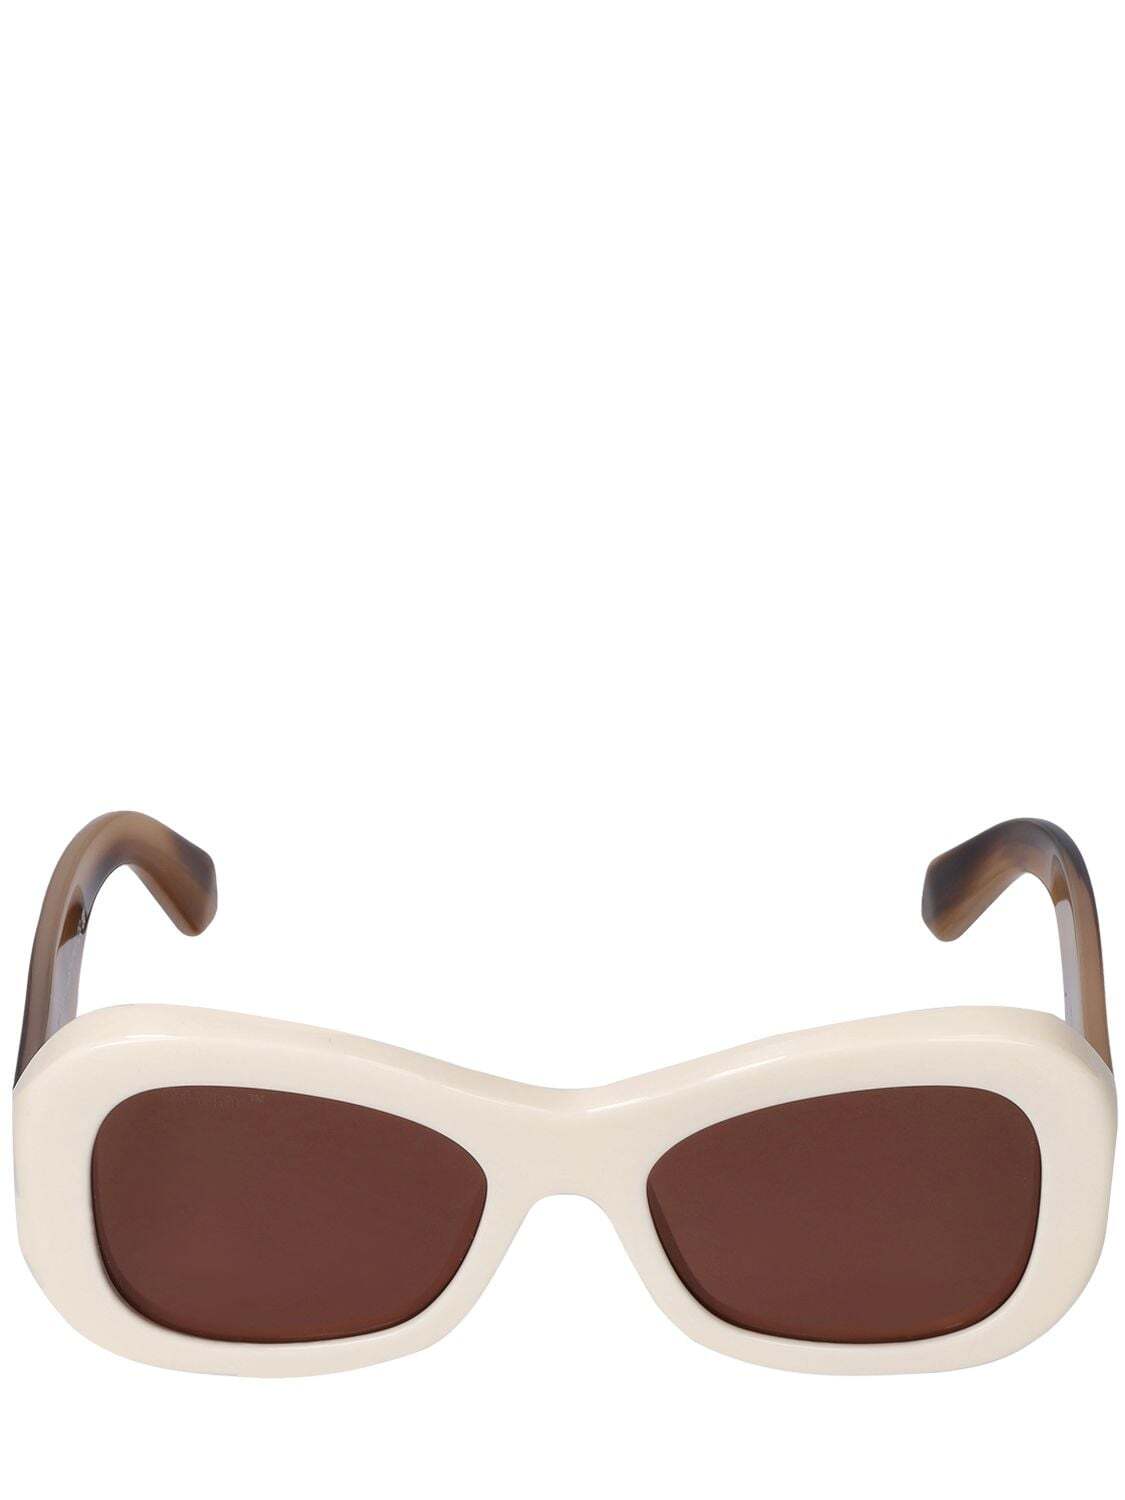 OFF-WHITE Pablo Round Acetate Sunglasses in brown / white